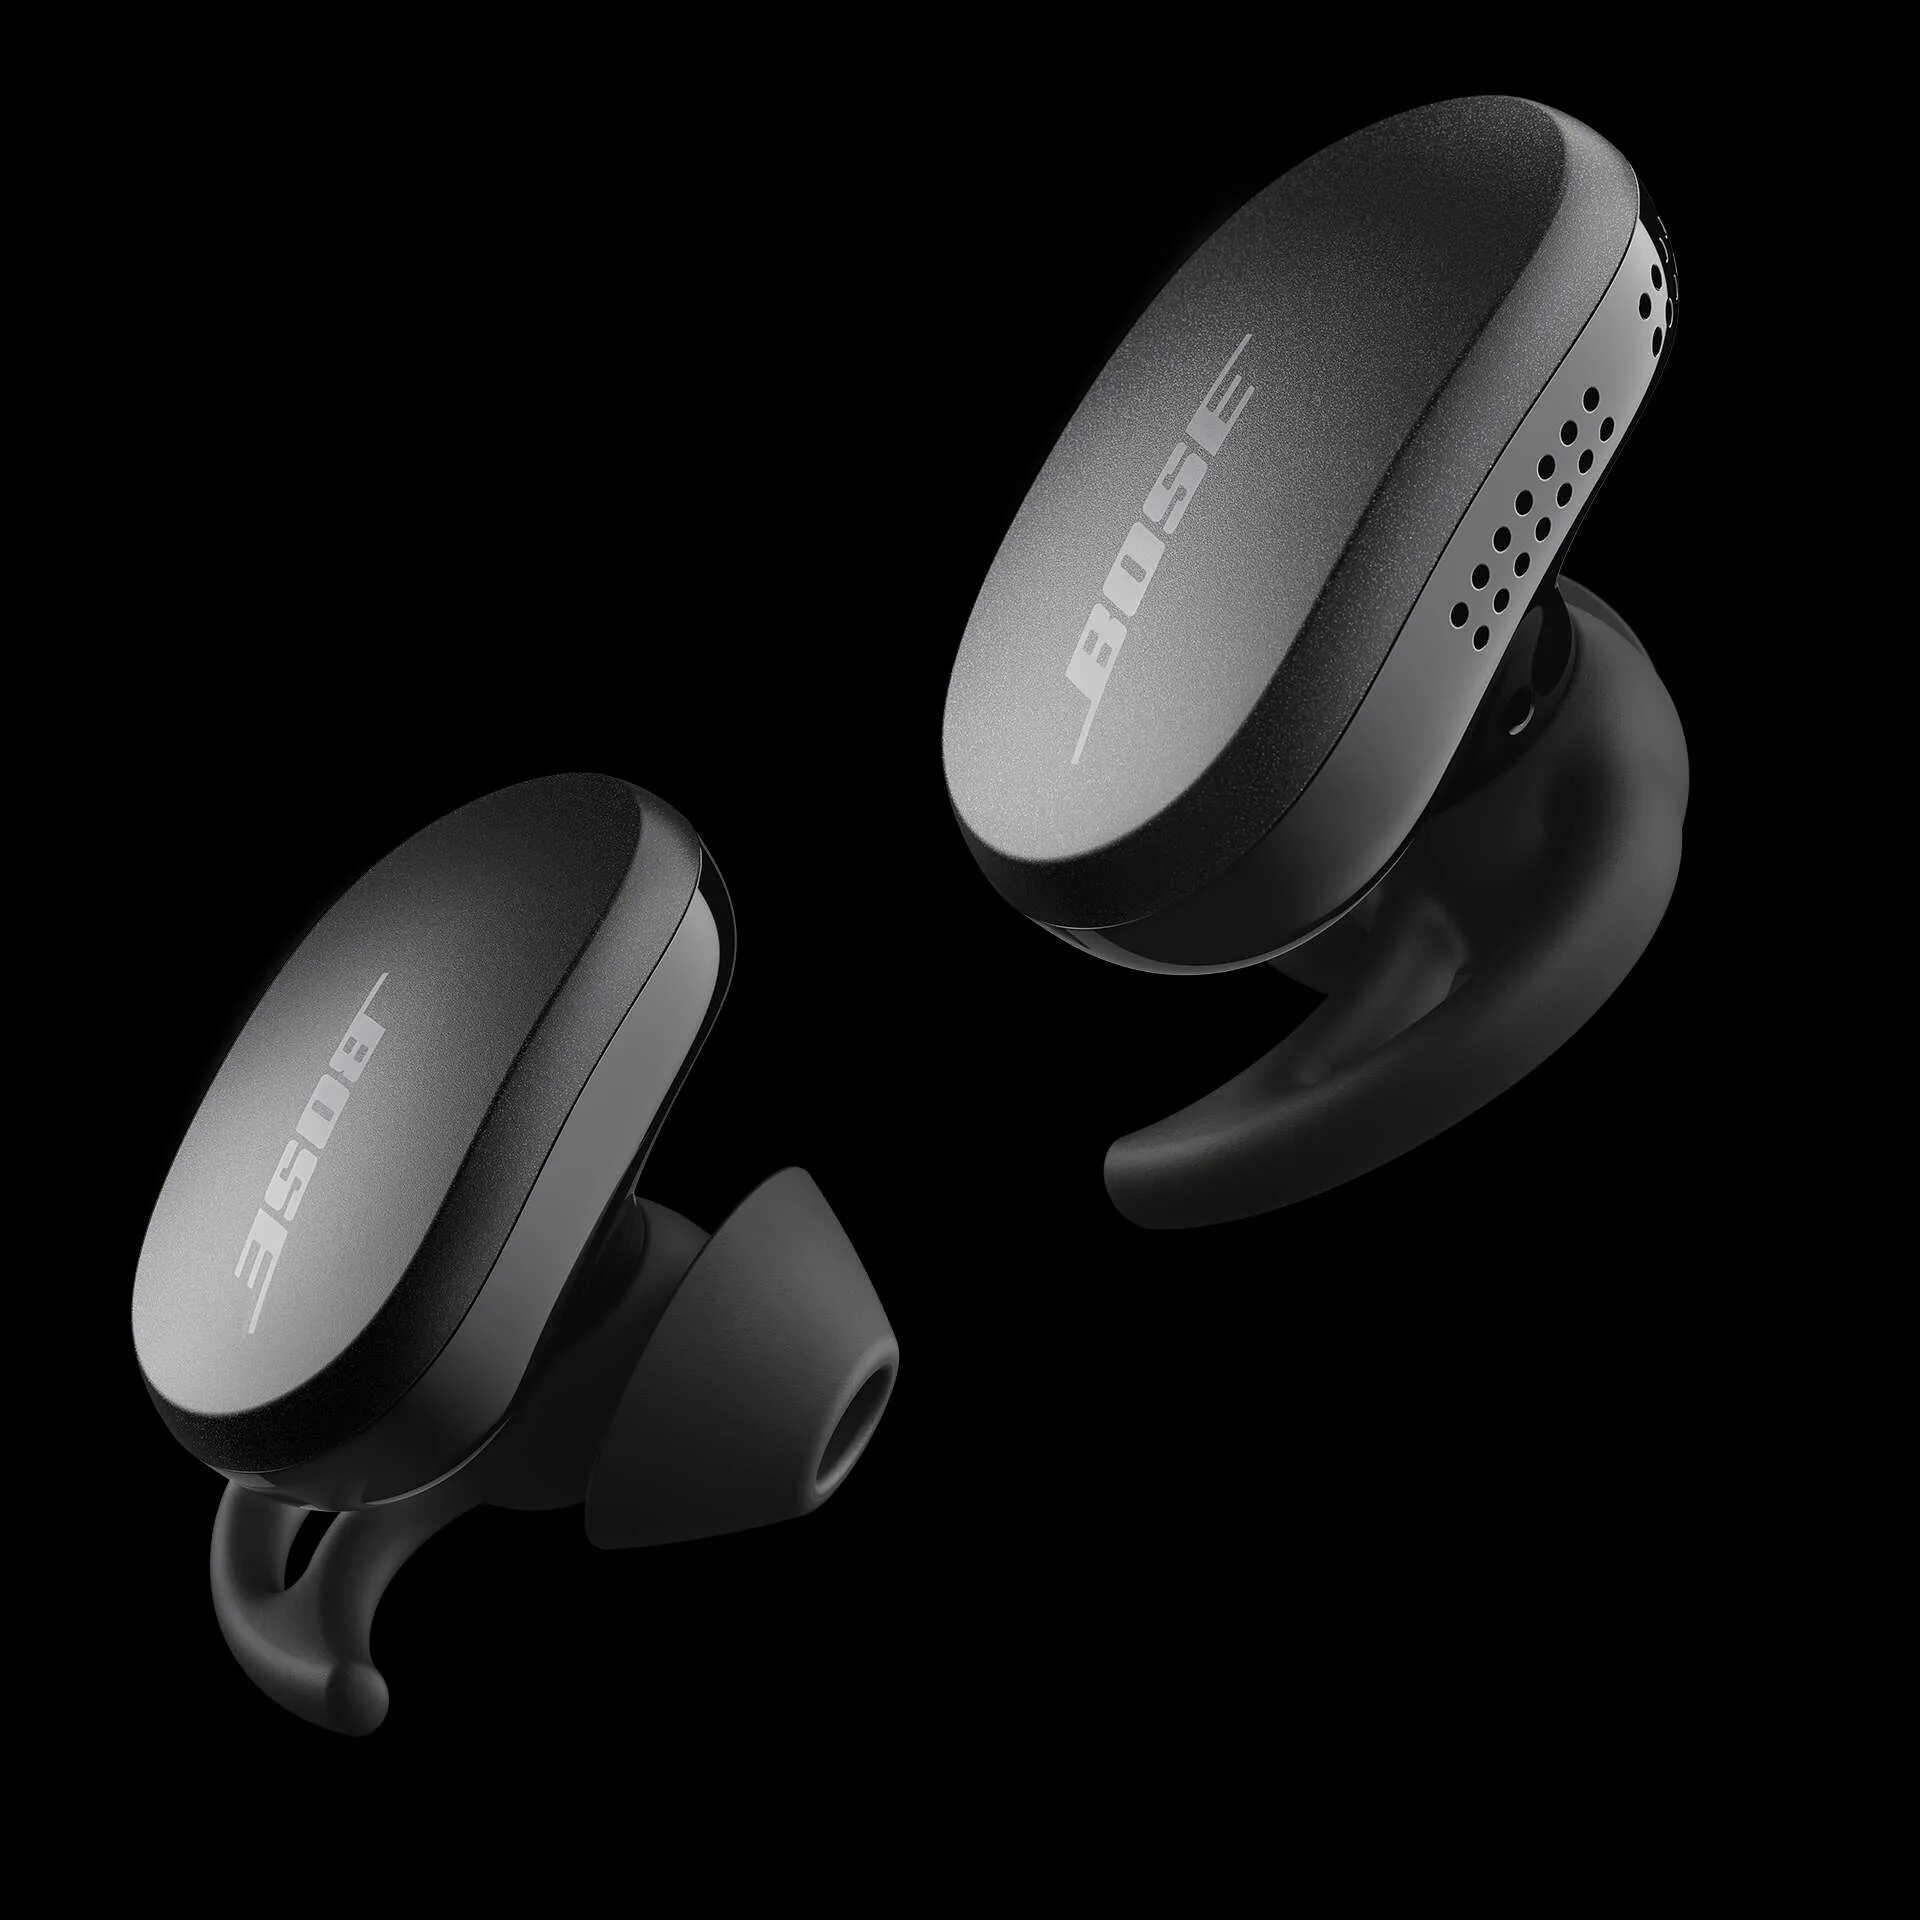 Bose quietcomfort black. Bose QUIETCOMFORT Earbuds Triple. Bose QUIETCOMFORT Earbuds Black. Bose QUIETCOMFORT Earbuds II Triple Black. Bose QUIETCOMFORT Noise Cancelling Earbuds Triple Black Headphone.